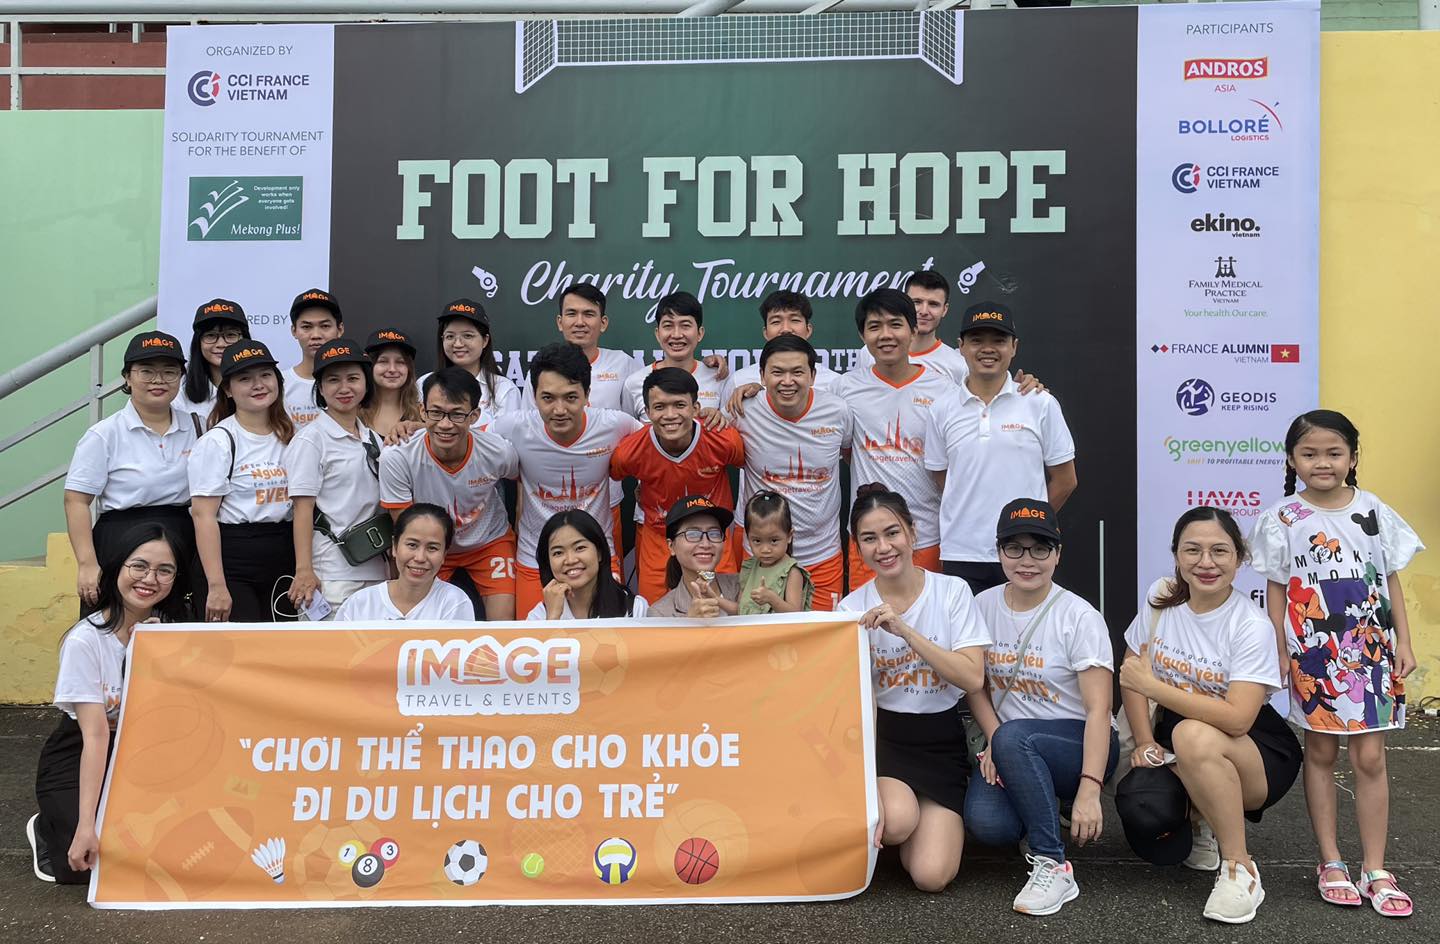 Image Travel a remporté le tournoi Foot for Hope 2022 organisé par CCIFV